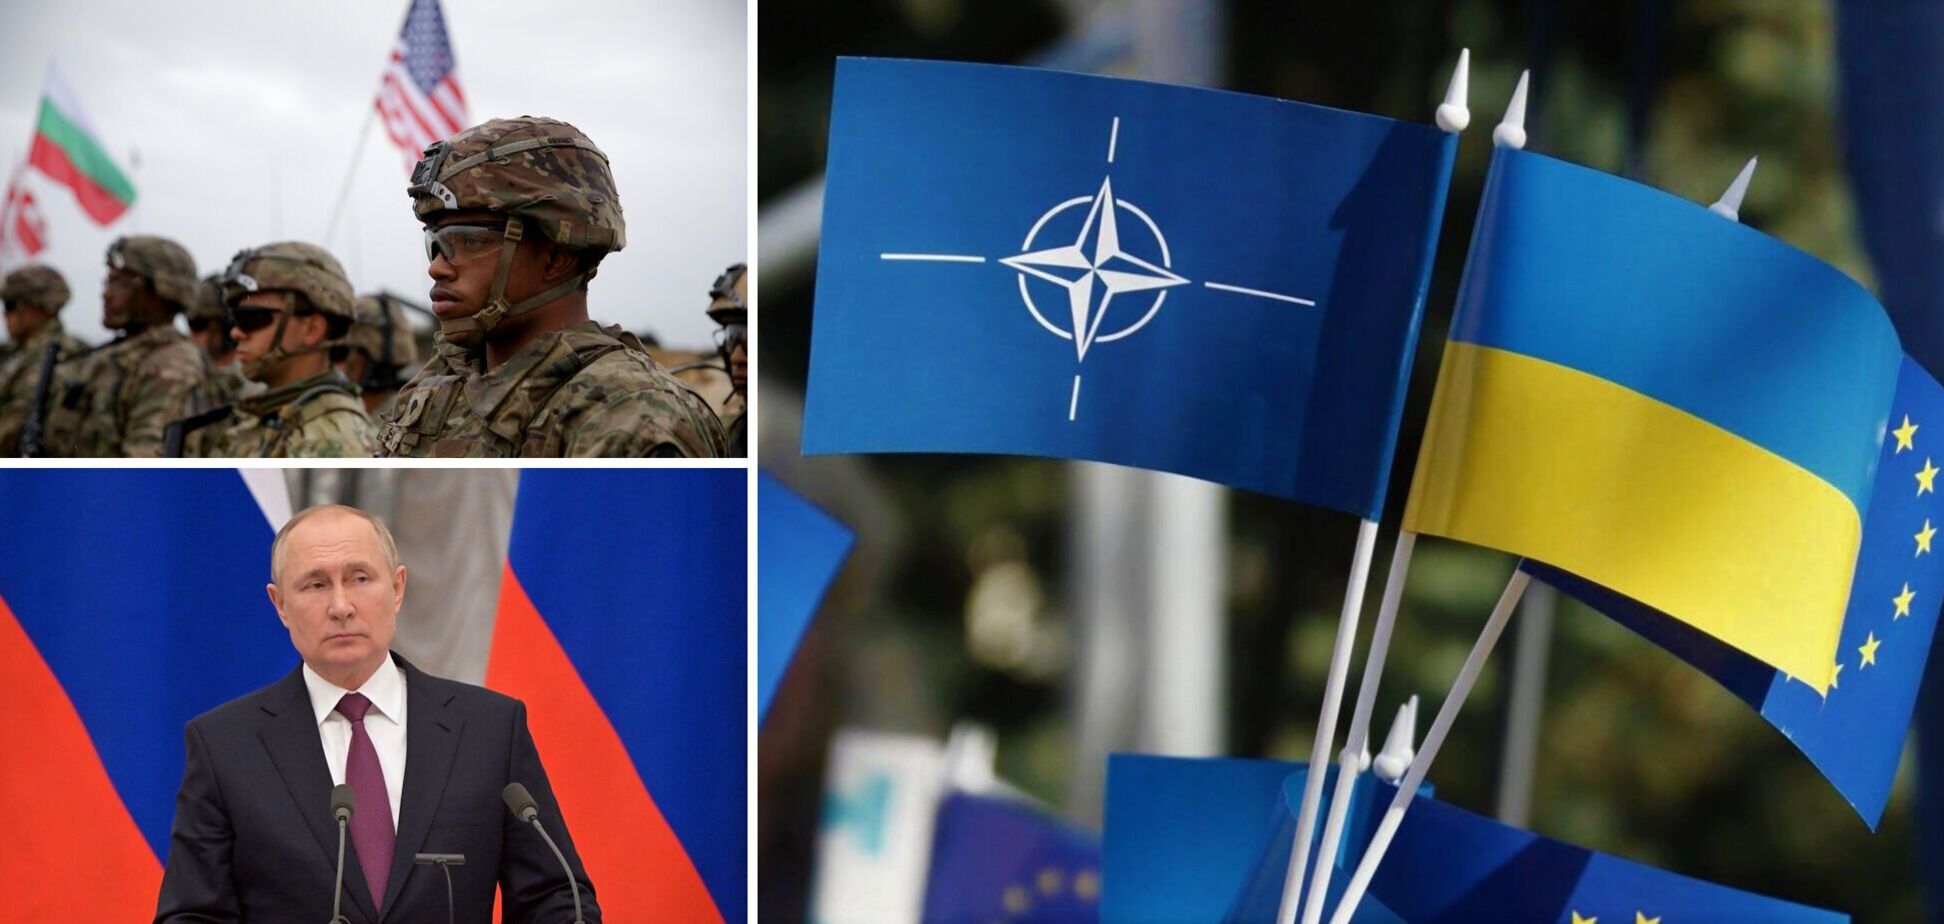 Вторжение России: может ли НАТО вмешаться и встать на защиту Украины?